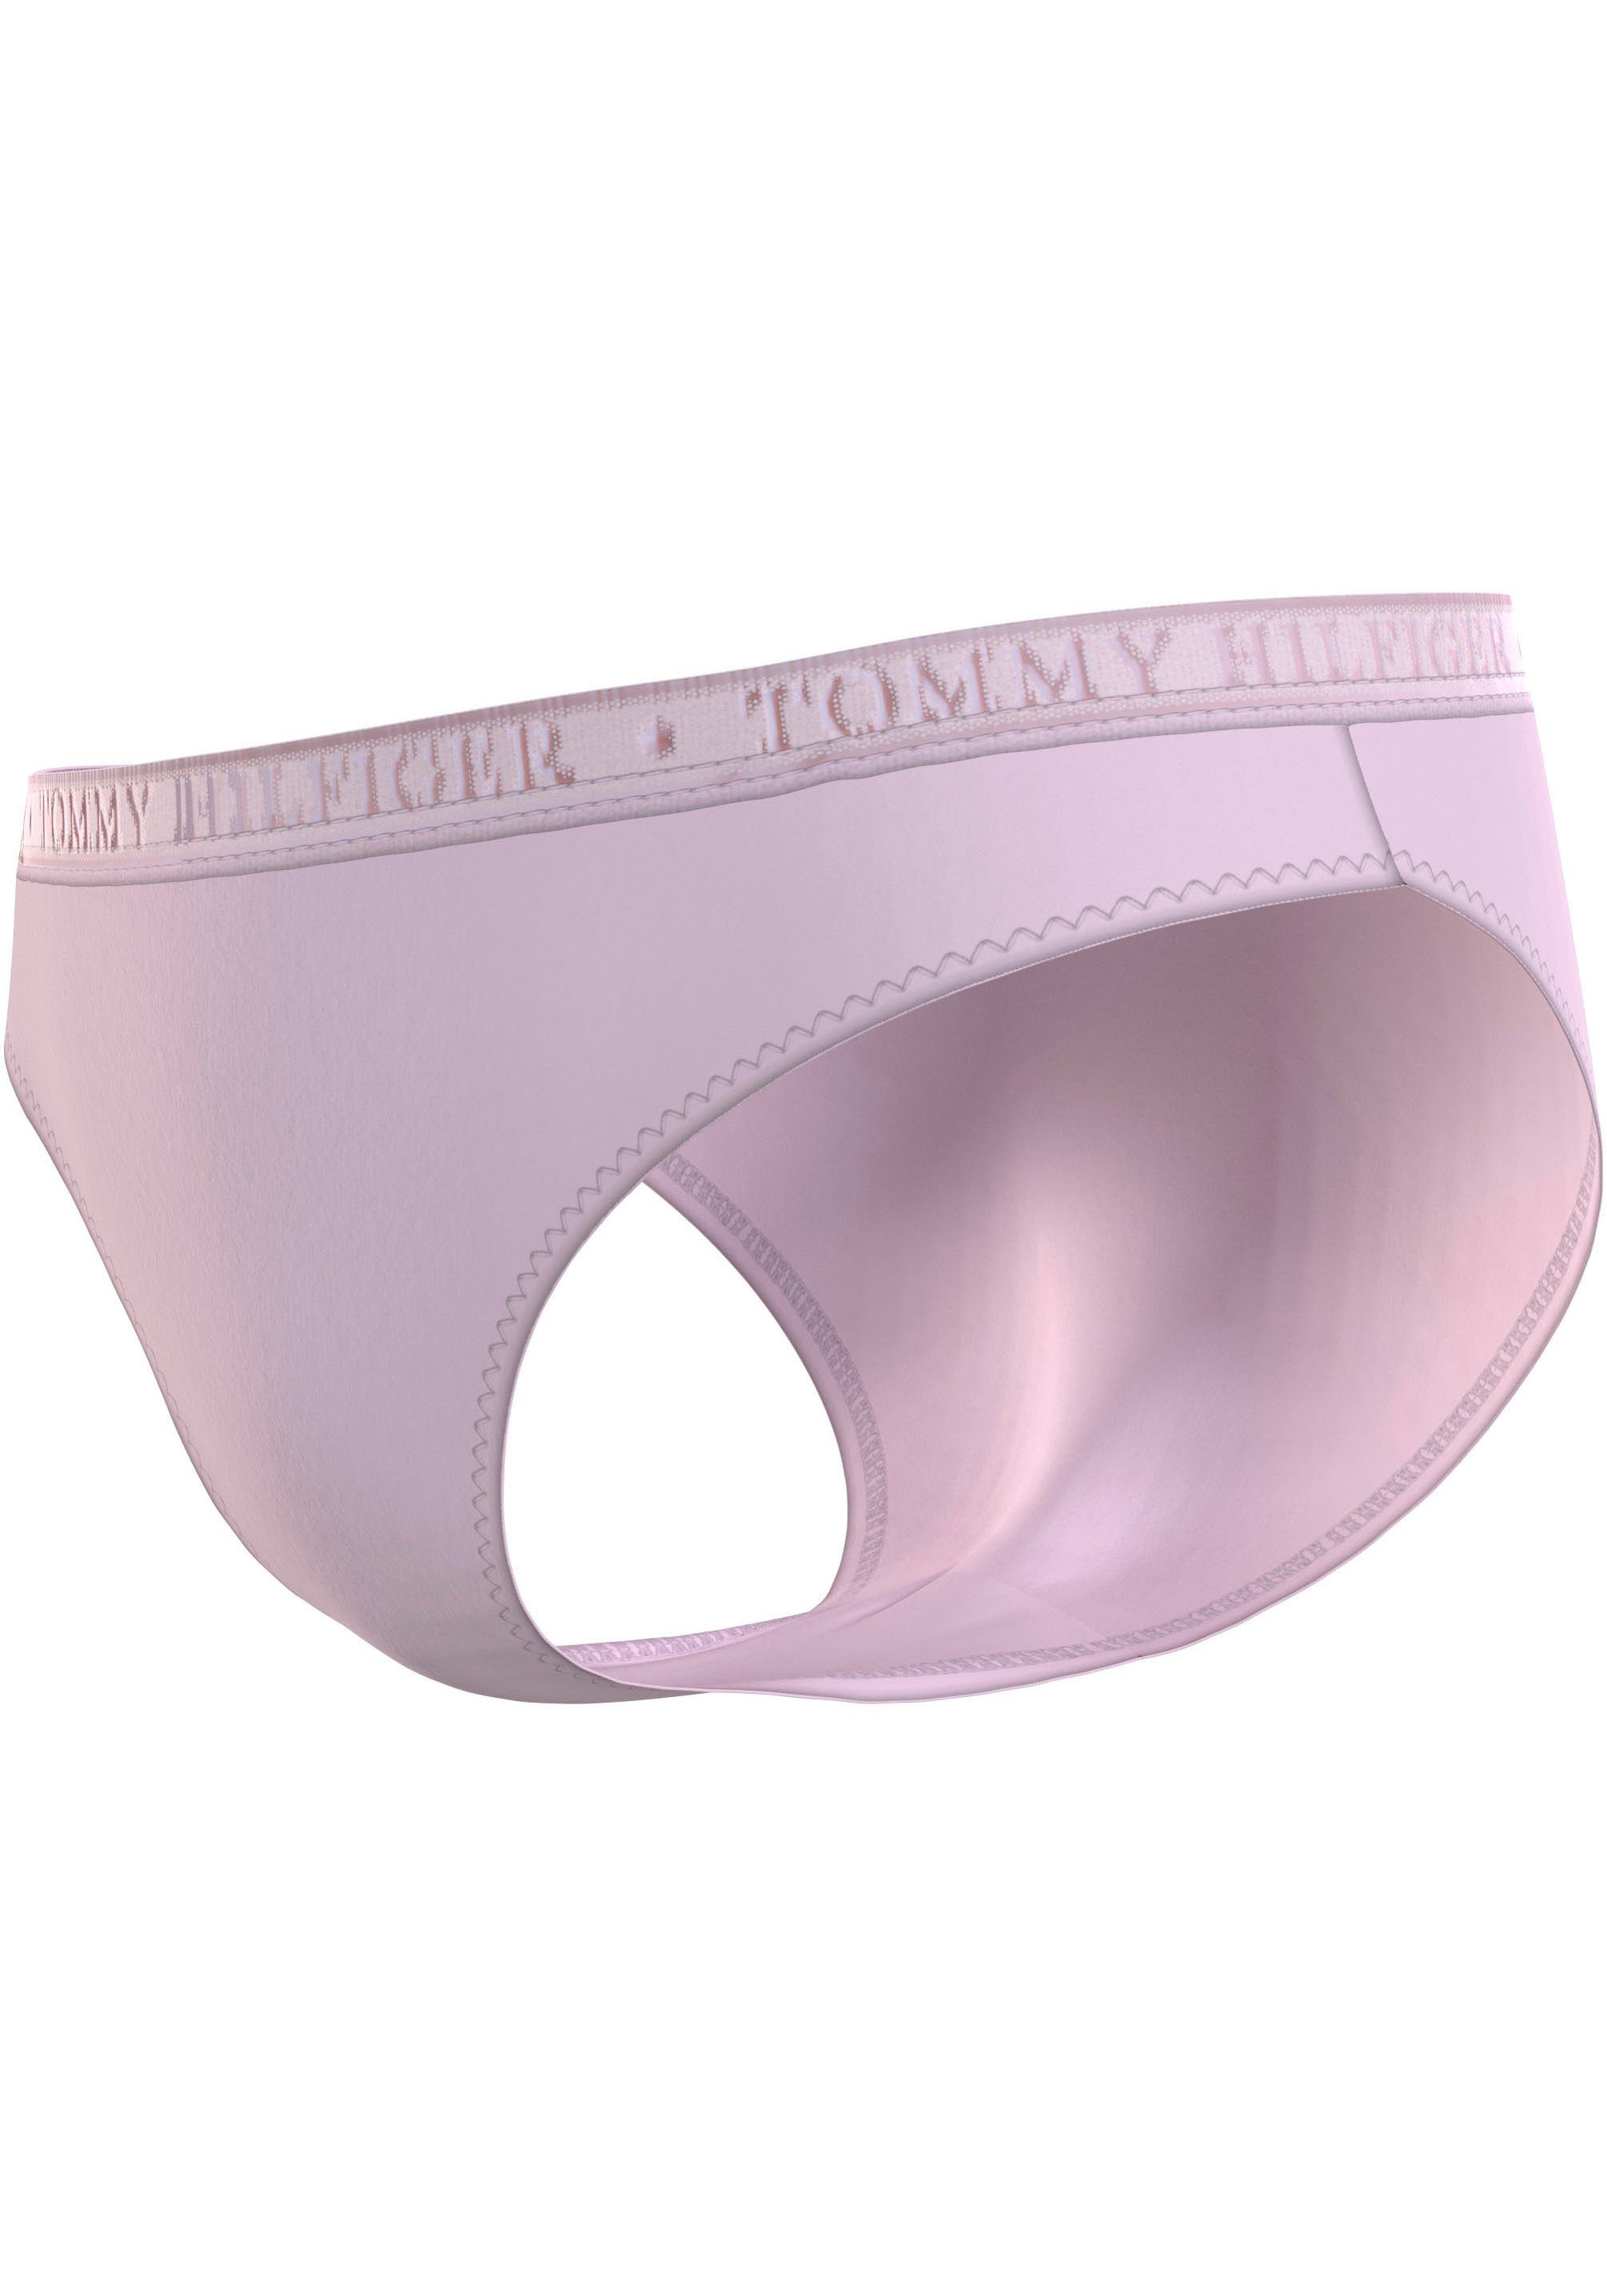 Tommy Hilfiger Underwear Bikinibroekje 3P BIKINI (Set van 3)